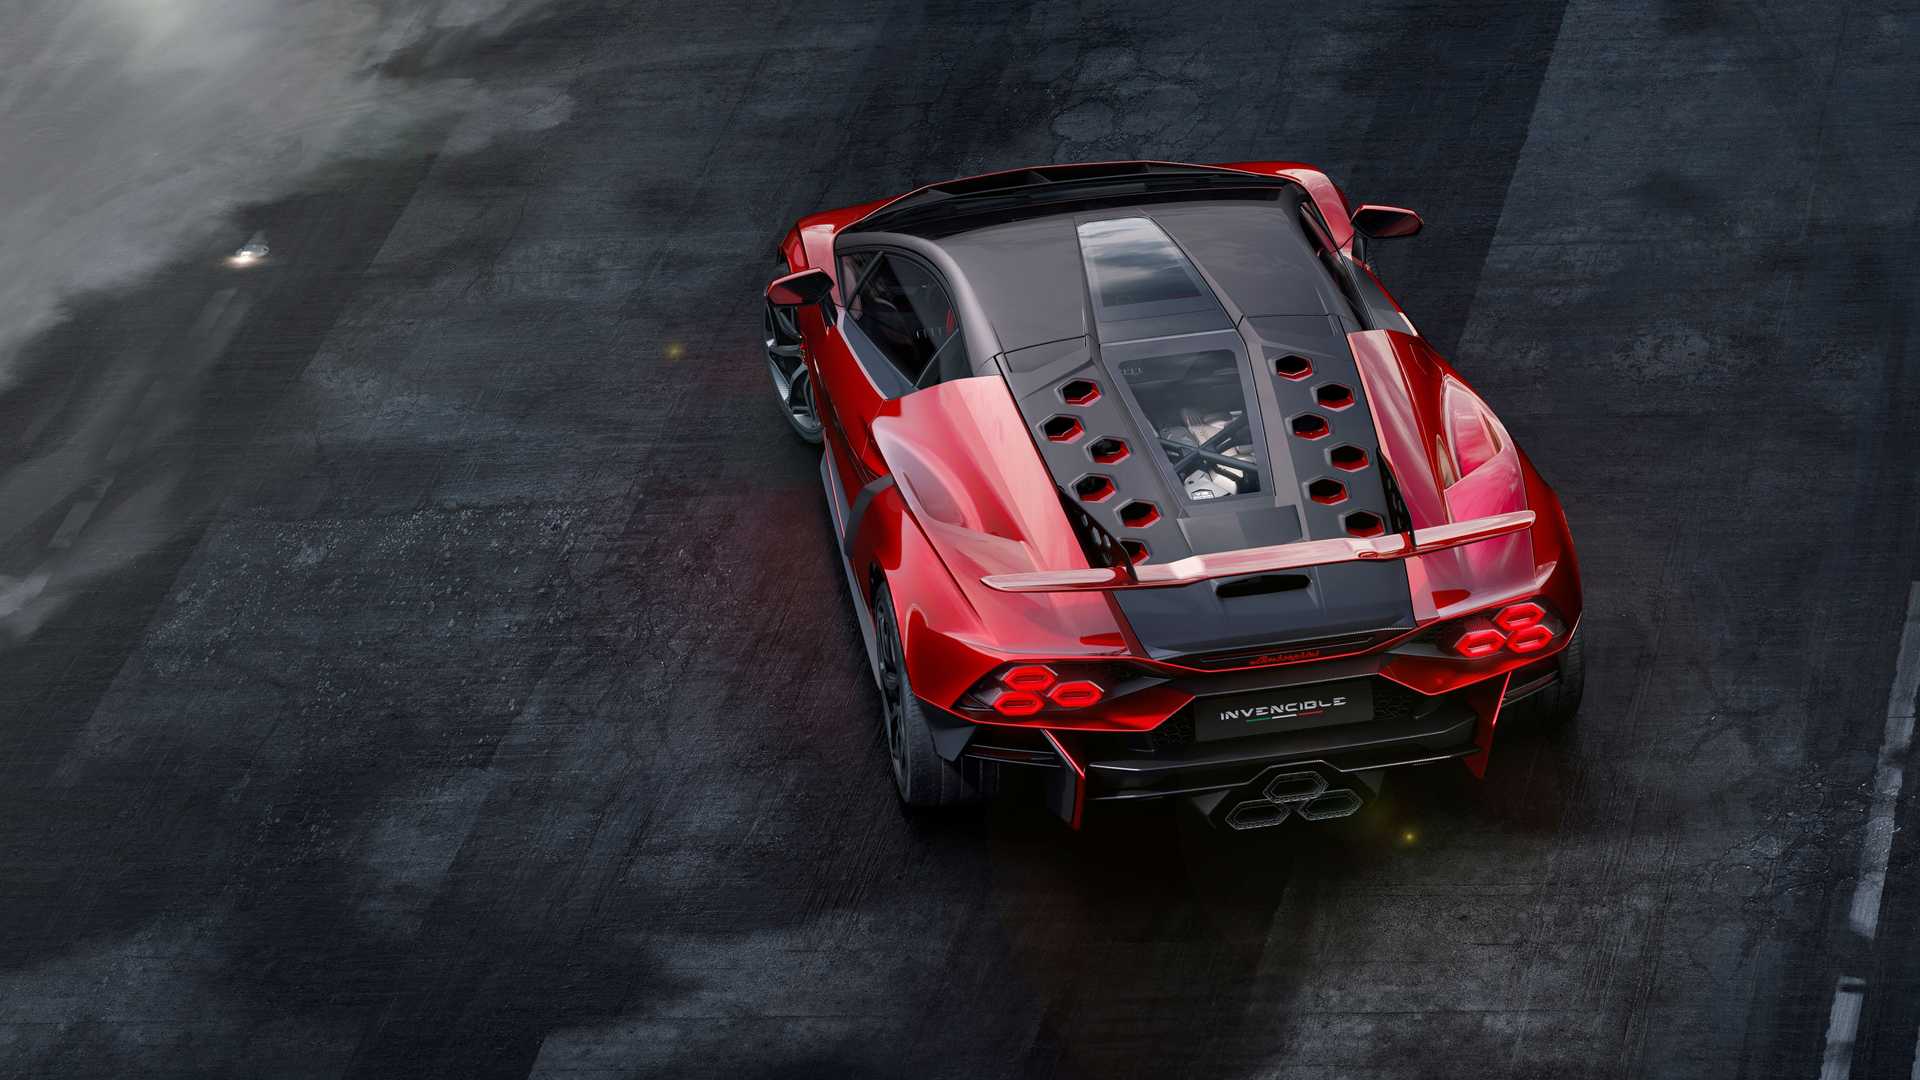 Lamborghini ra mắt bộ đôi siêu xe V12 chạy xăng cuối cùng, sau đây sẽ toàn siêu xe điện êm ru chưa biết nẹt pô kiểu gì - Ảnh 8.